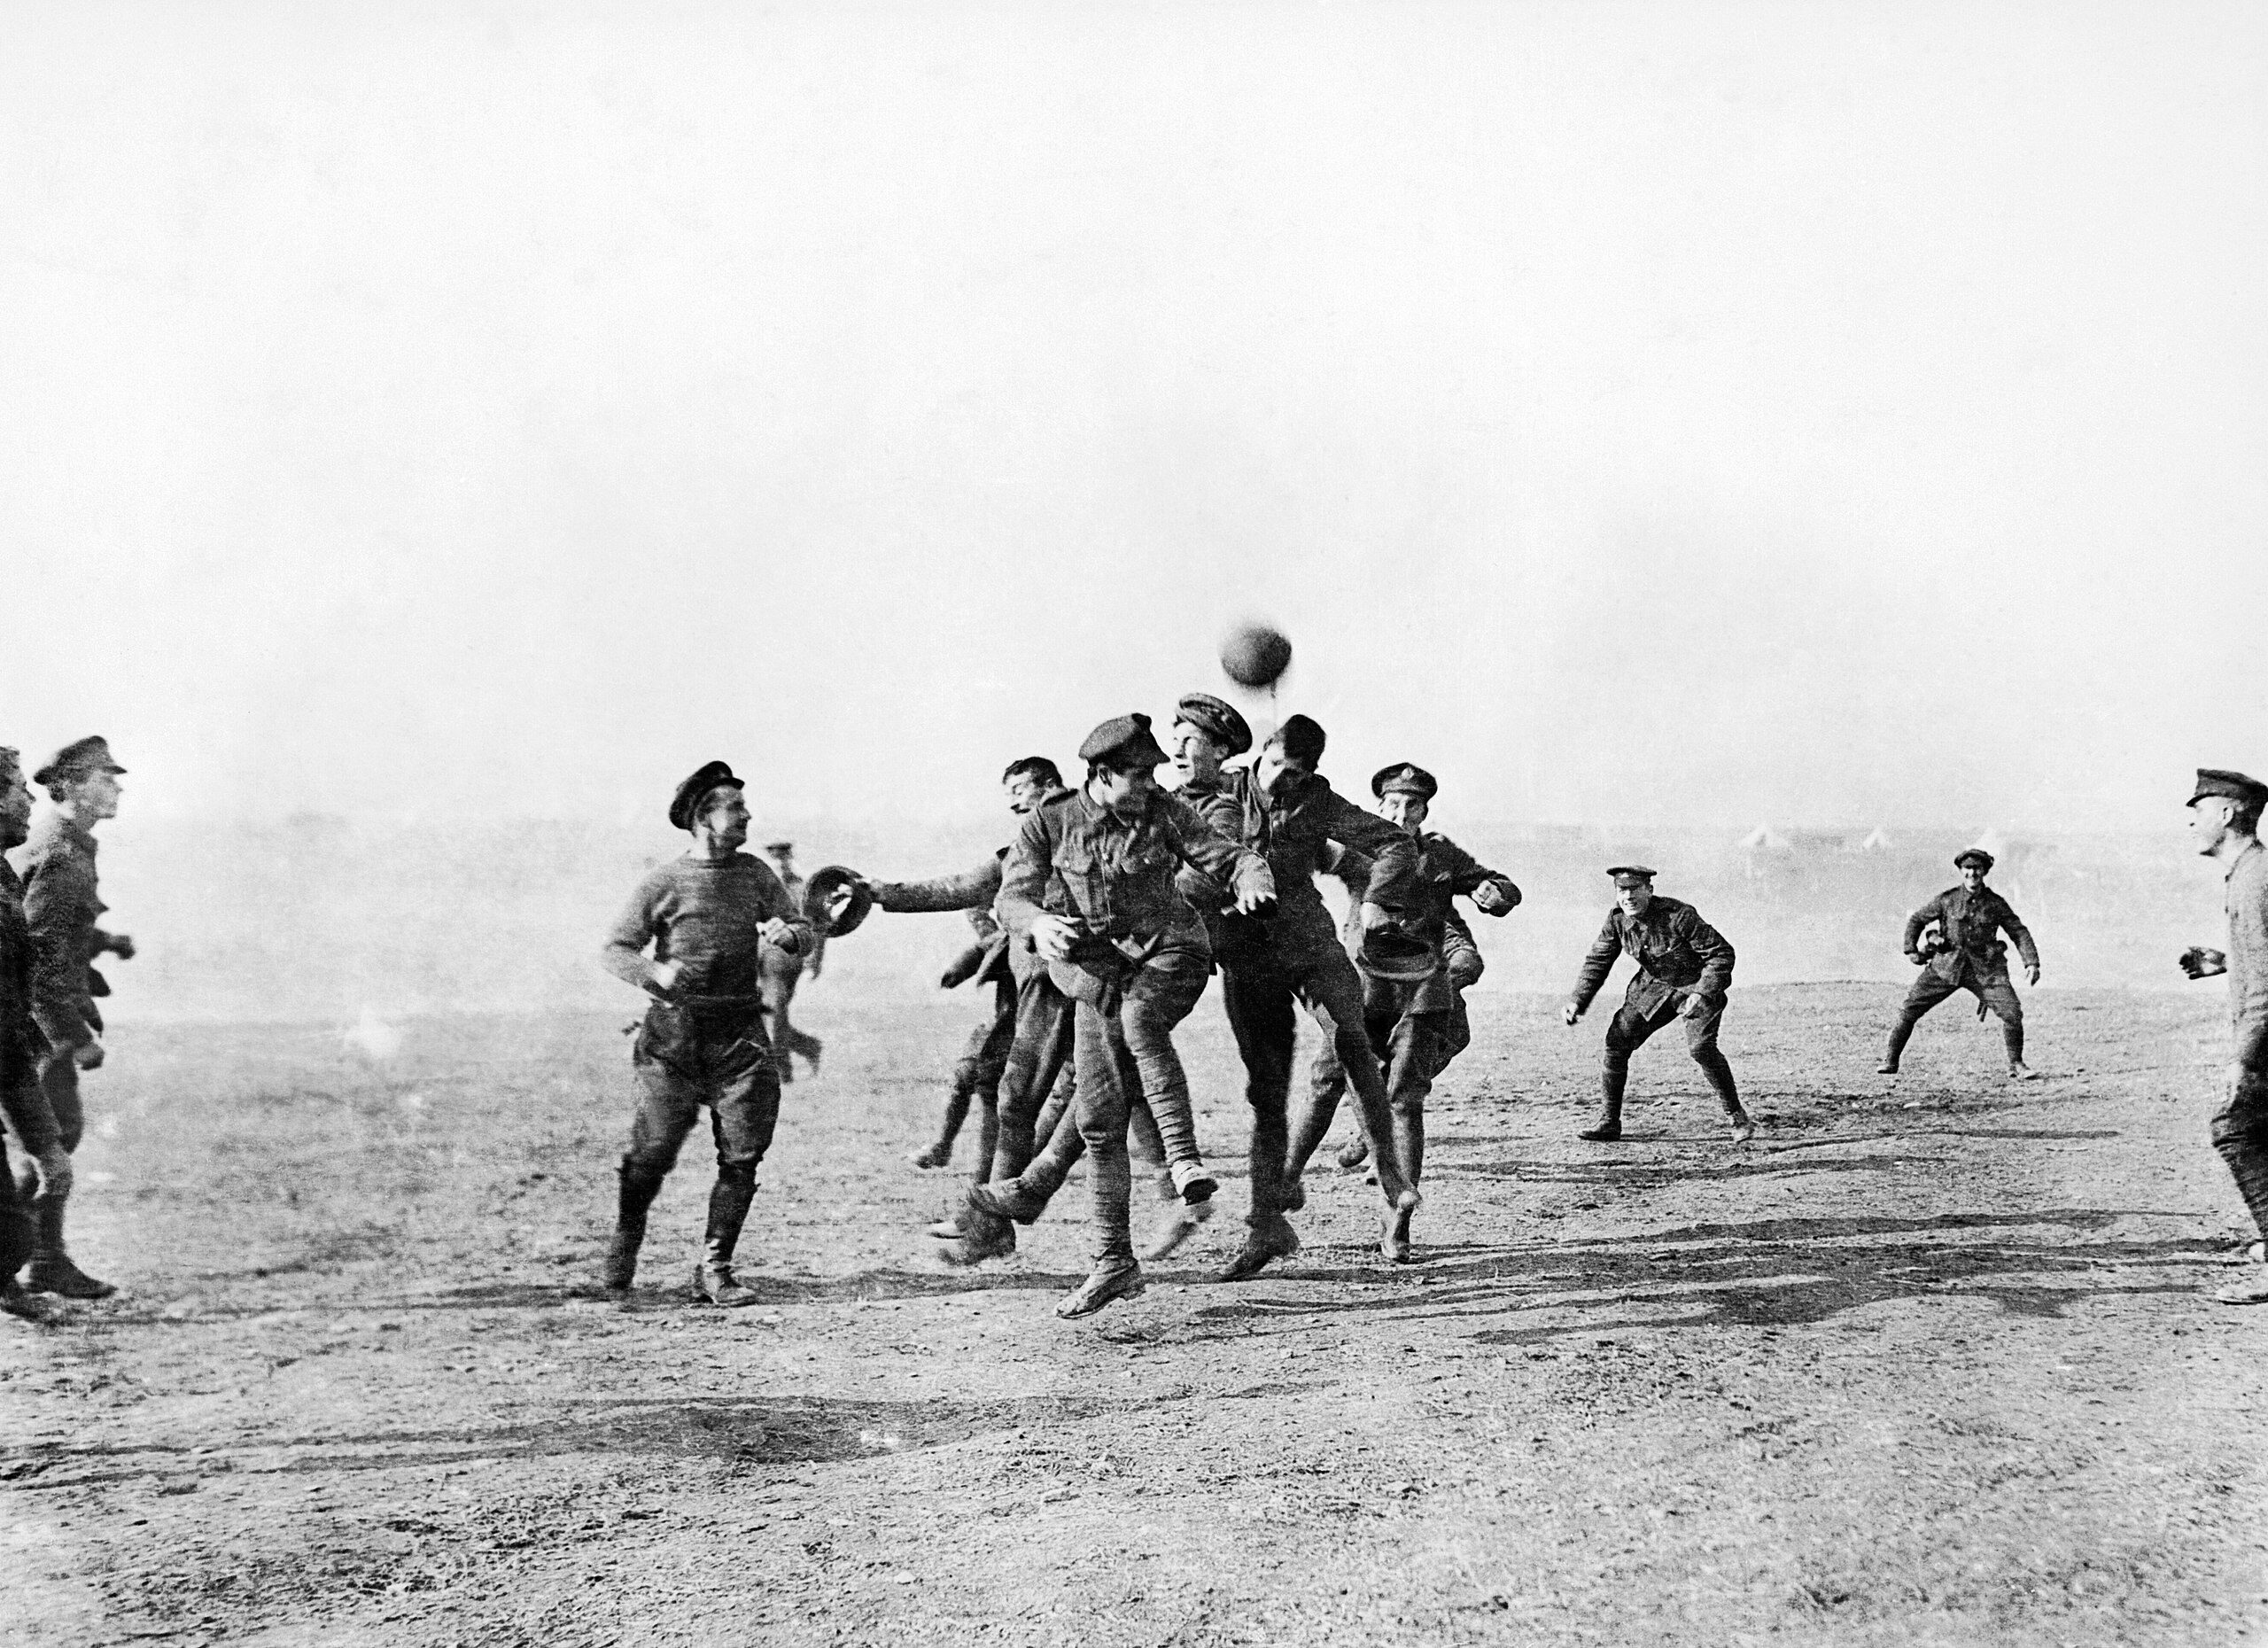 เหตุการณ์พักรบวันคริสต์มาส ทหาร อังกฤษ เล่น ฟุตบอล ใน Salonika